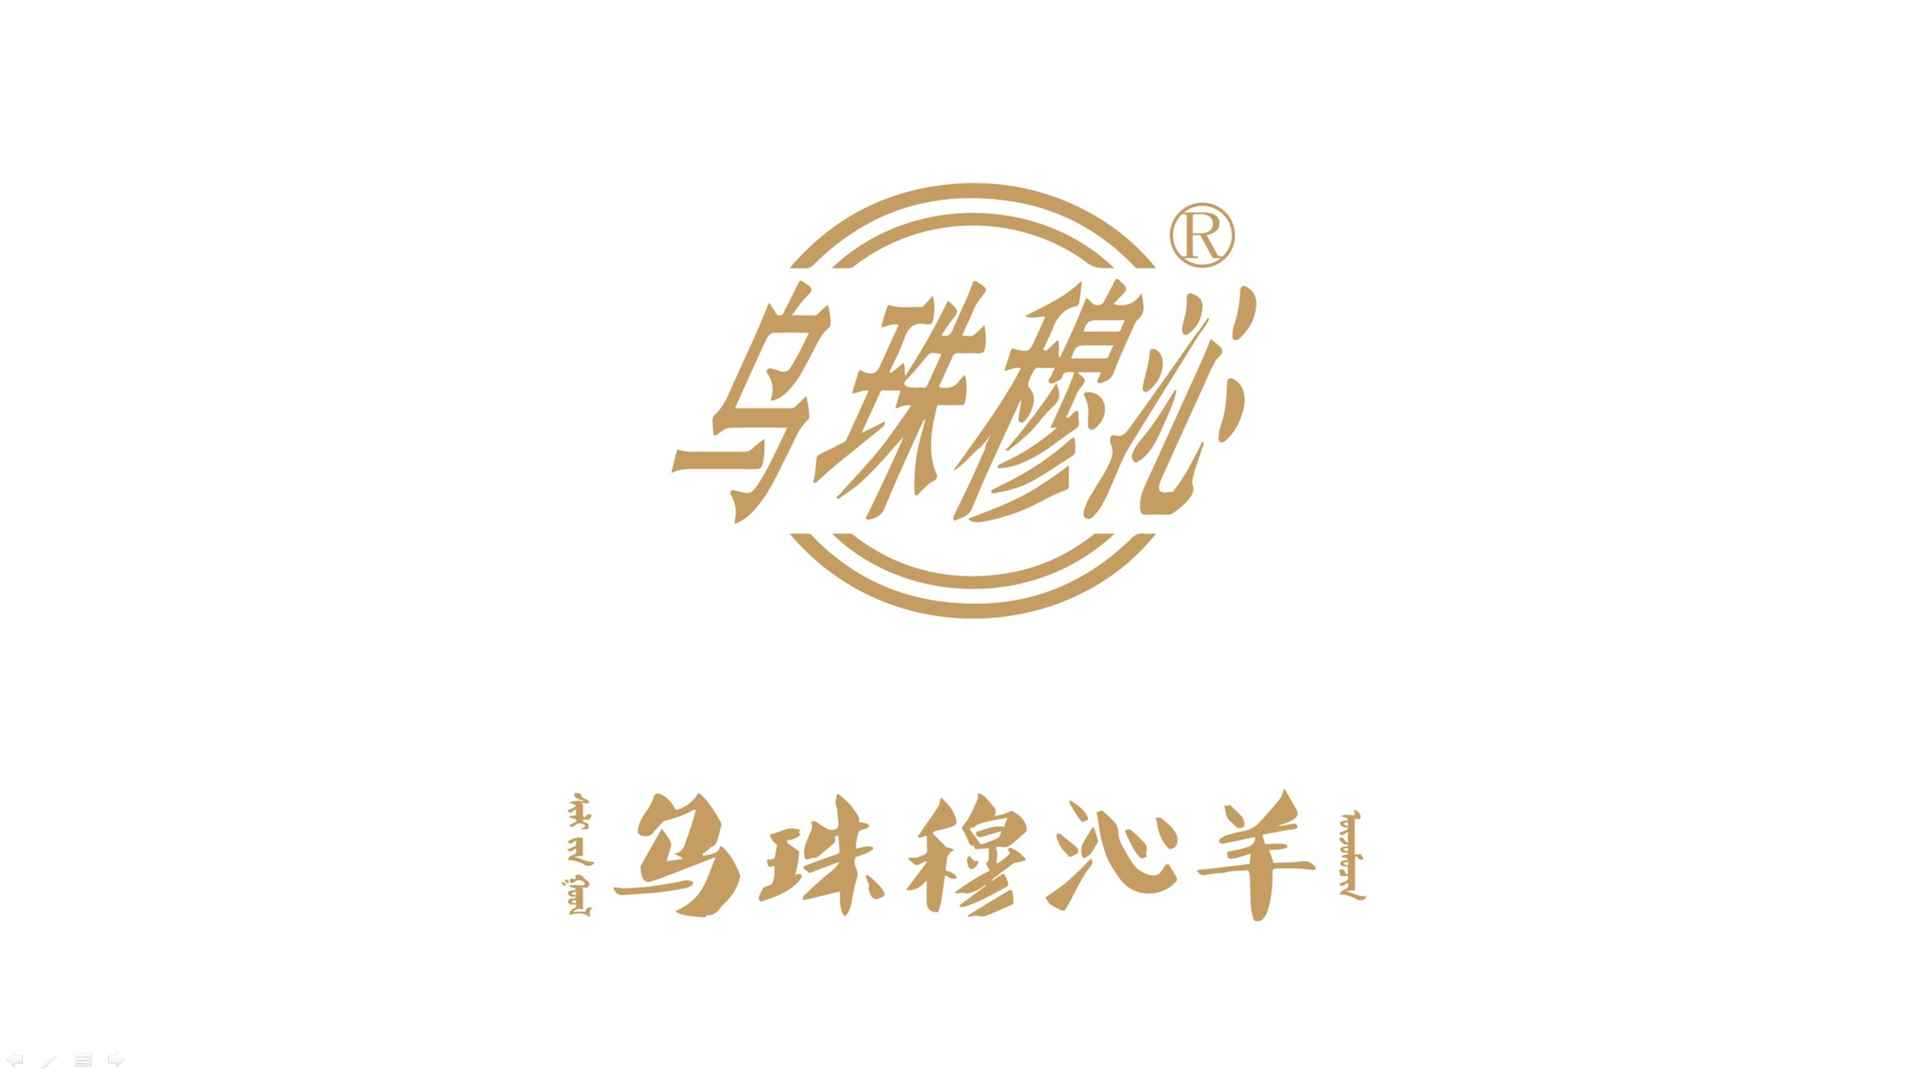 经典芜湖包装设计公司案例TOP3名单发布 